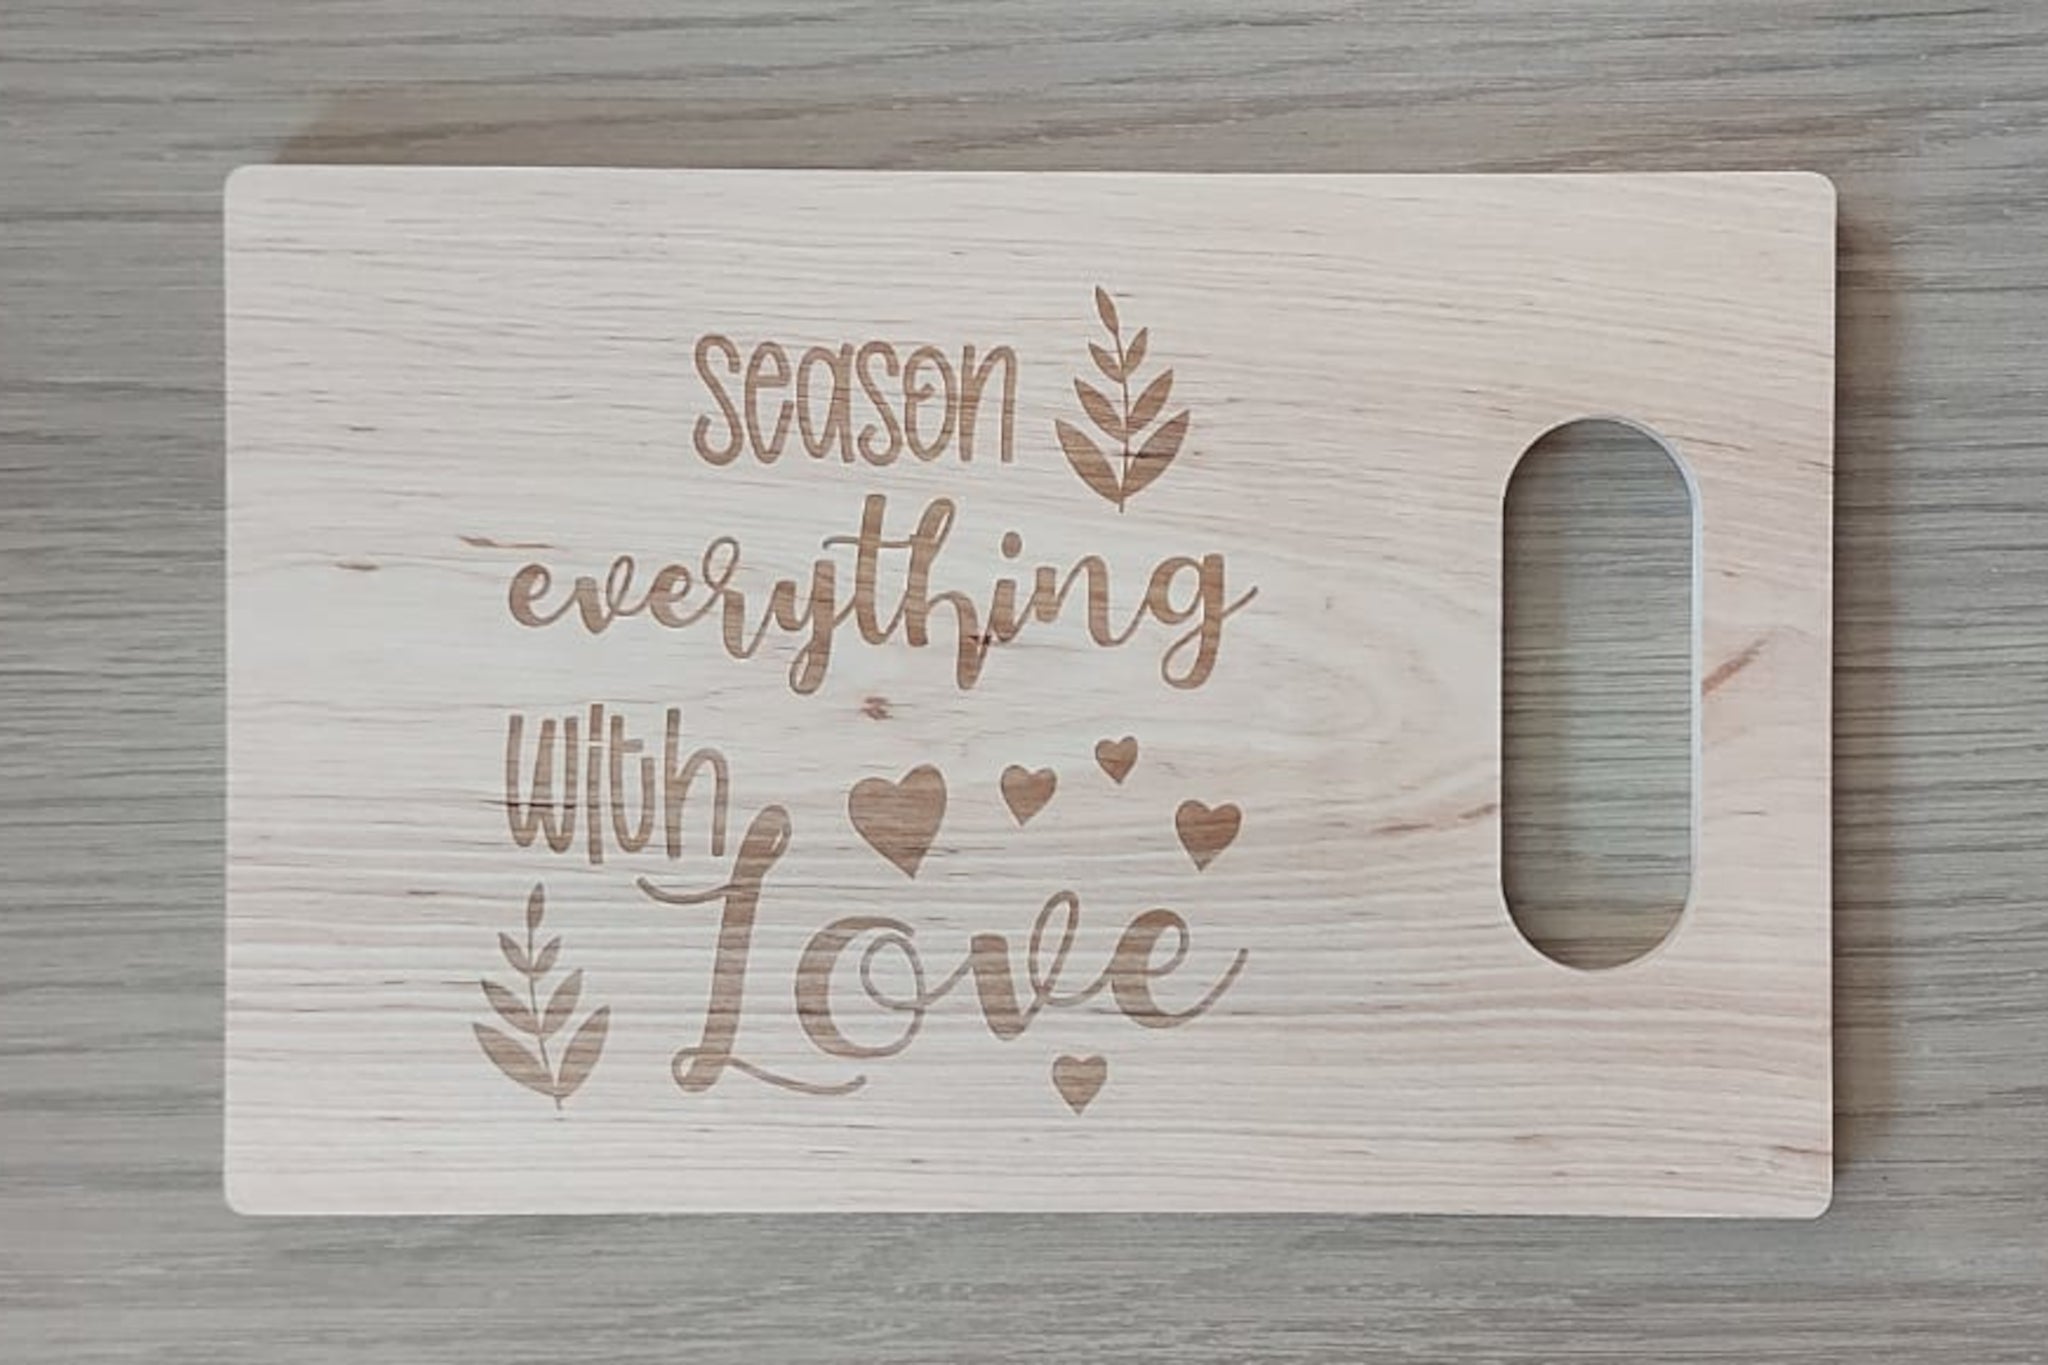 Houten tapasplank, snijplank, serveerplank rechthoek met handvat. Afgewerkt met mooie gravure van 'Season everything with love'. 